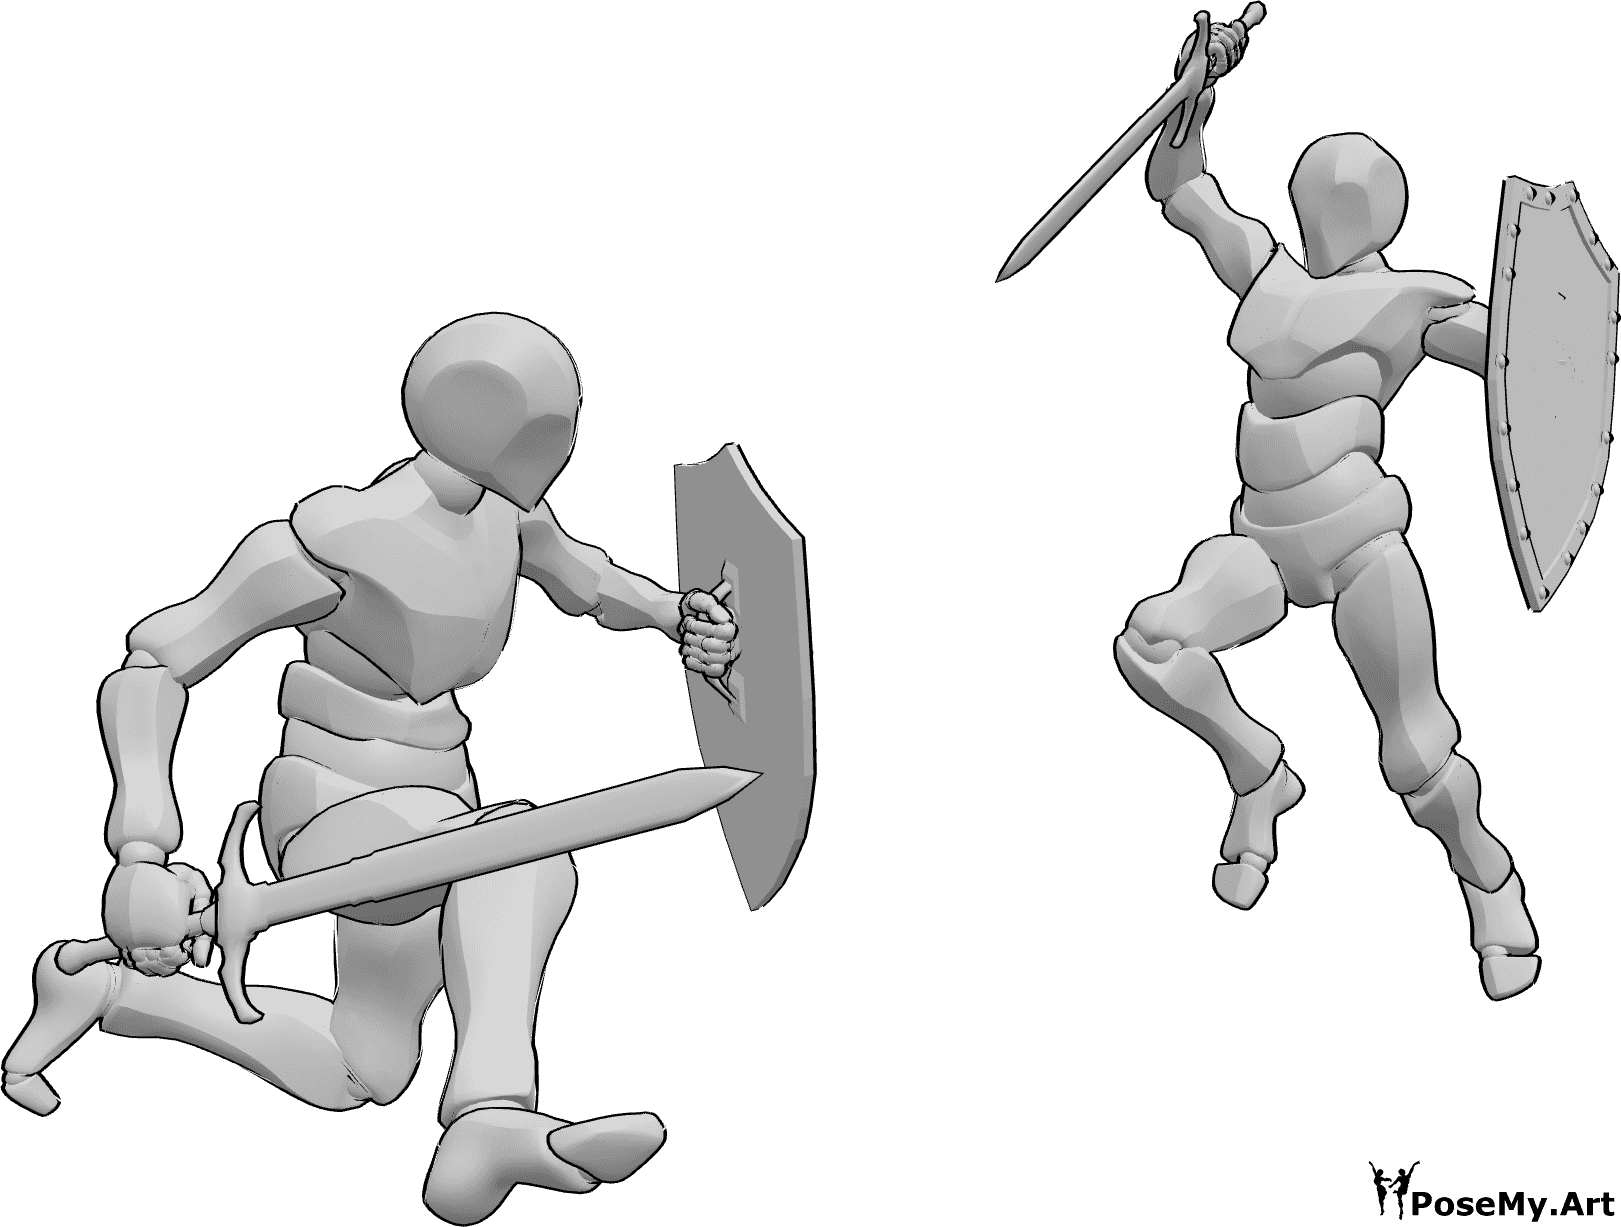 Riferimento alle pose- Posa di combattimento con spada e scudo - Due maschi stanno combattendo, impugnando spade e scudi, in posa d'attacco